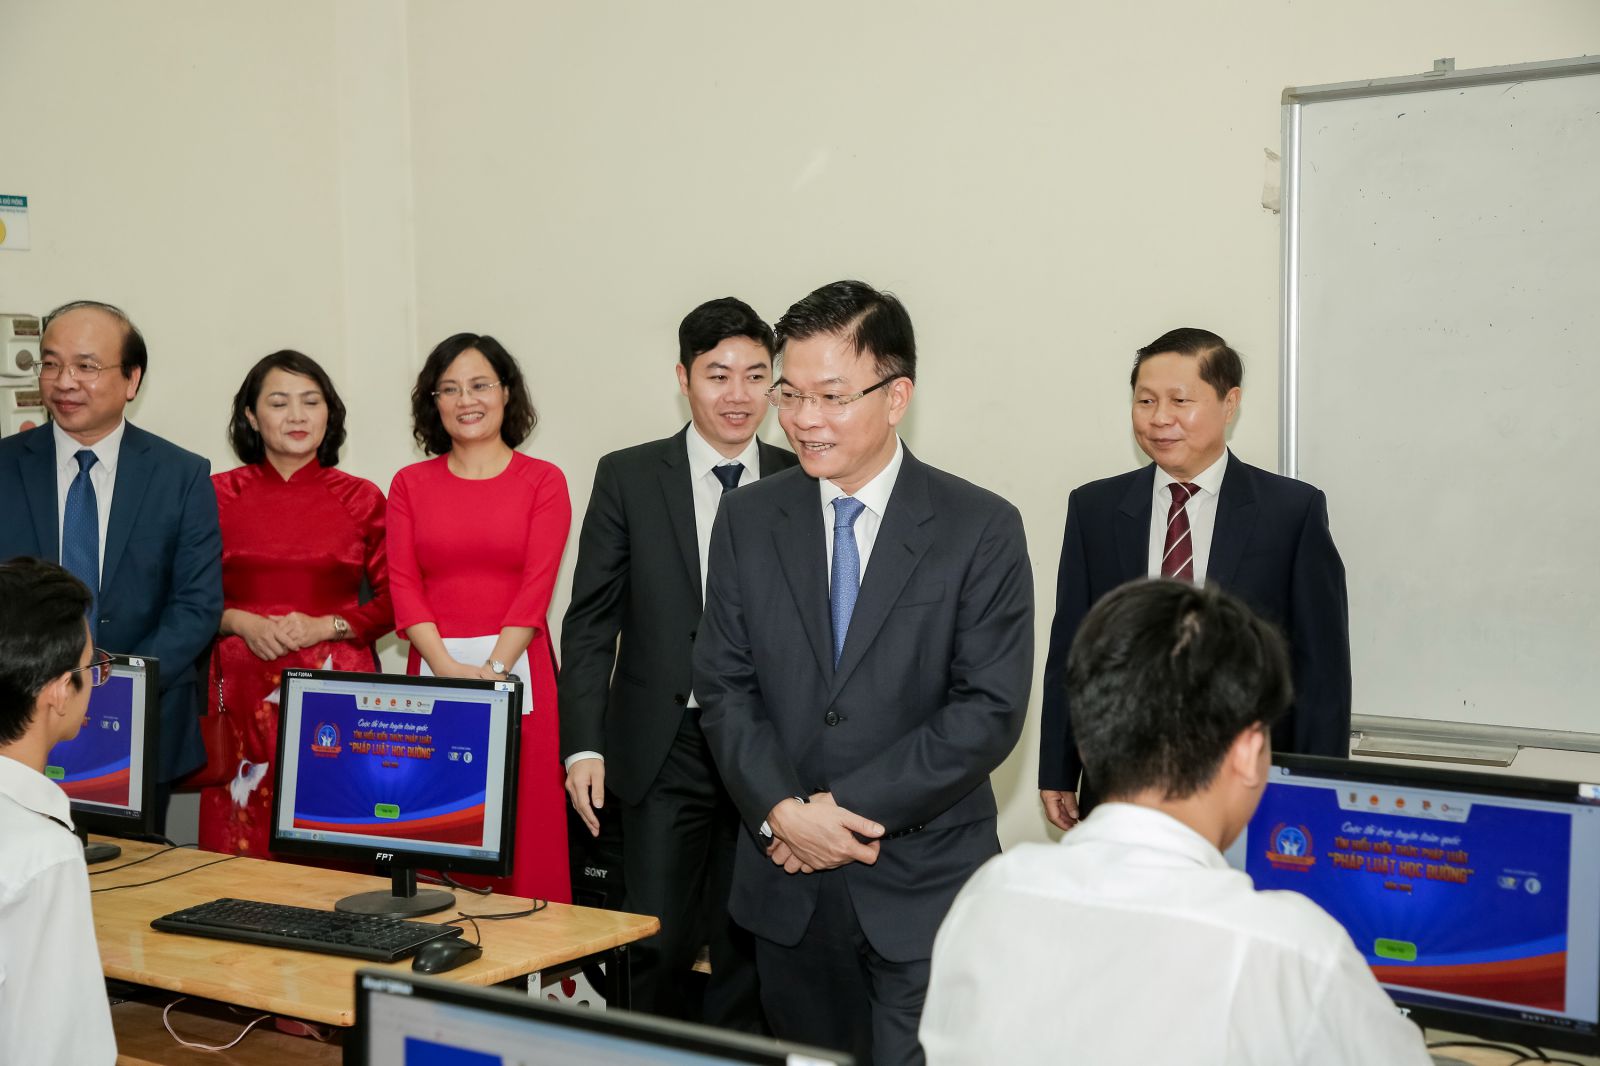 Các vị đại biểu cấp cao tham quan phòng thi trực tuyến tại Trường Chu Văn An, Hà Nội